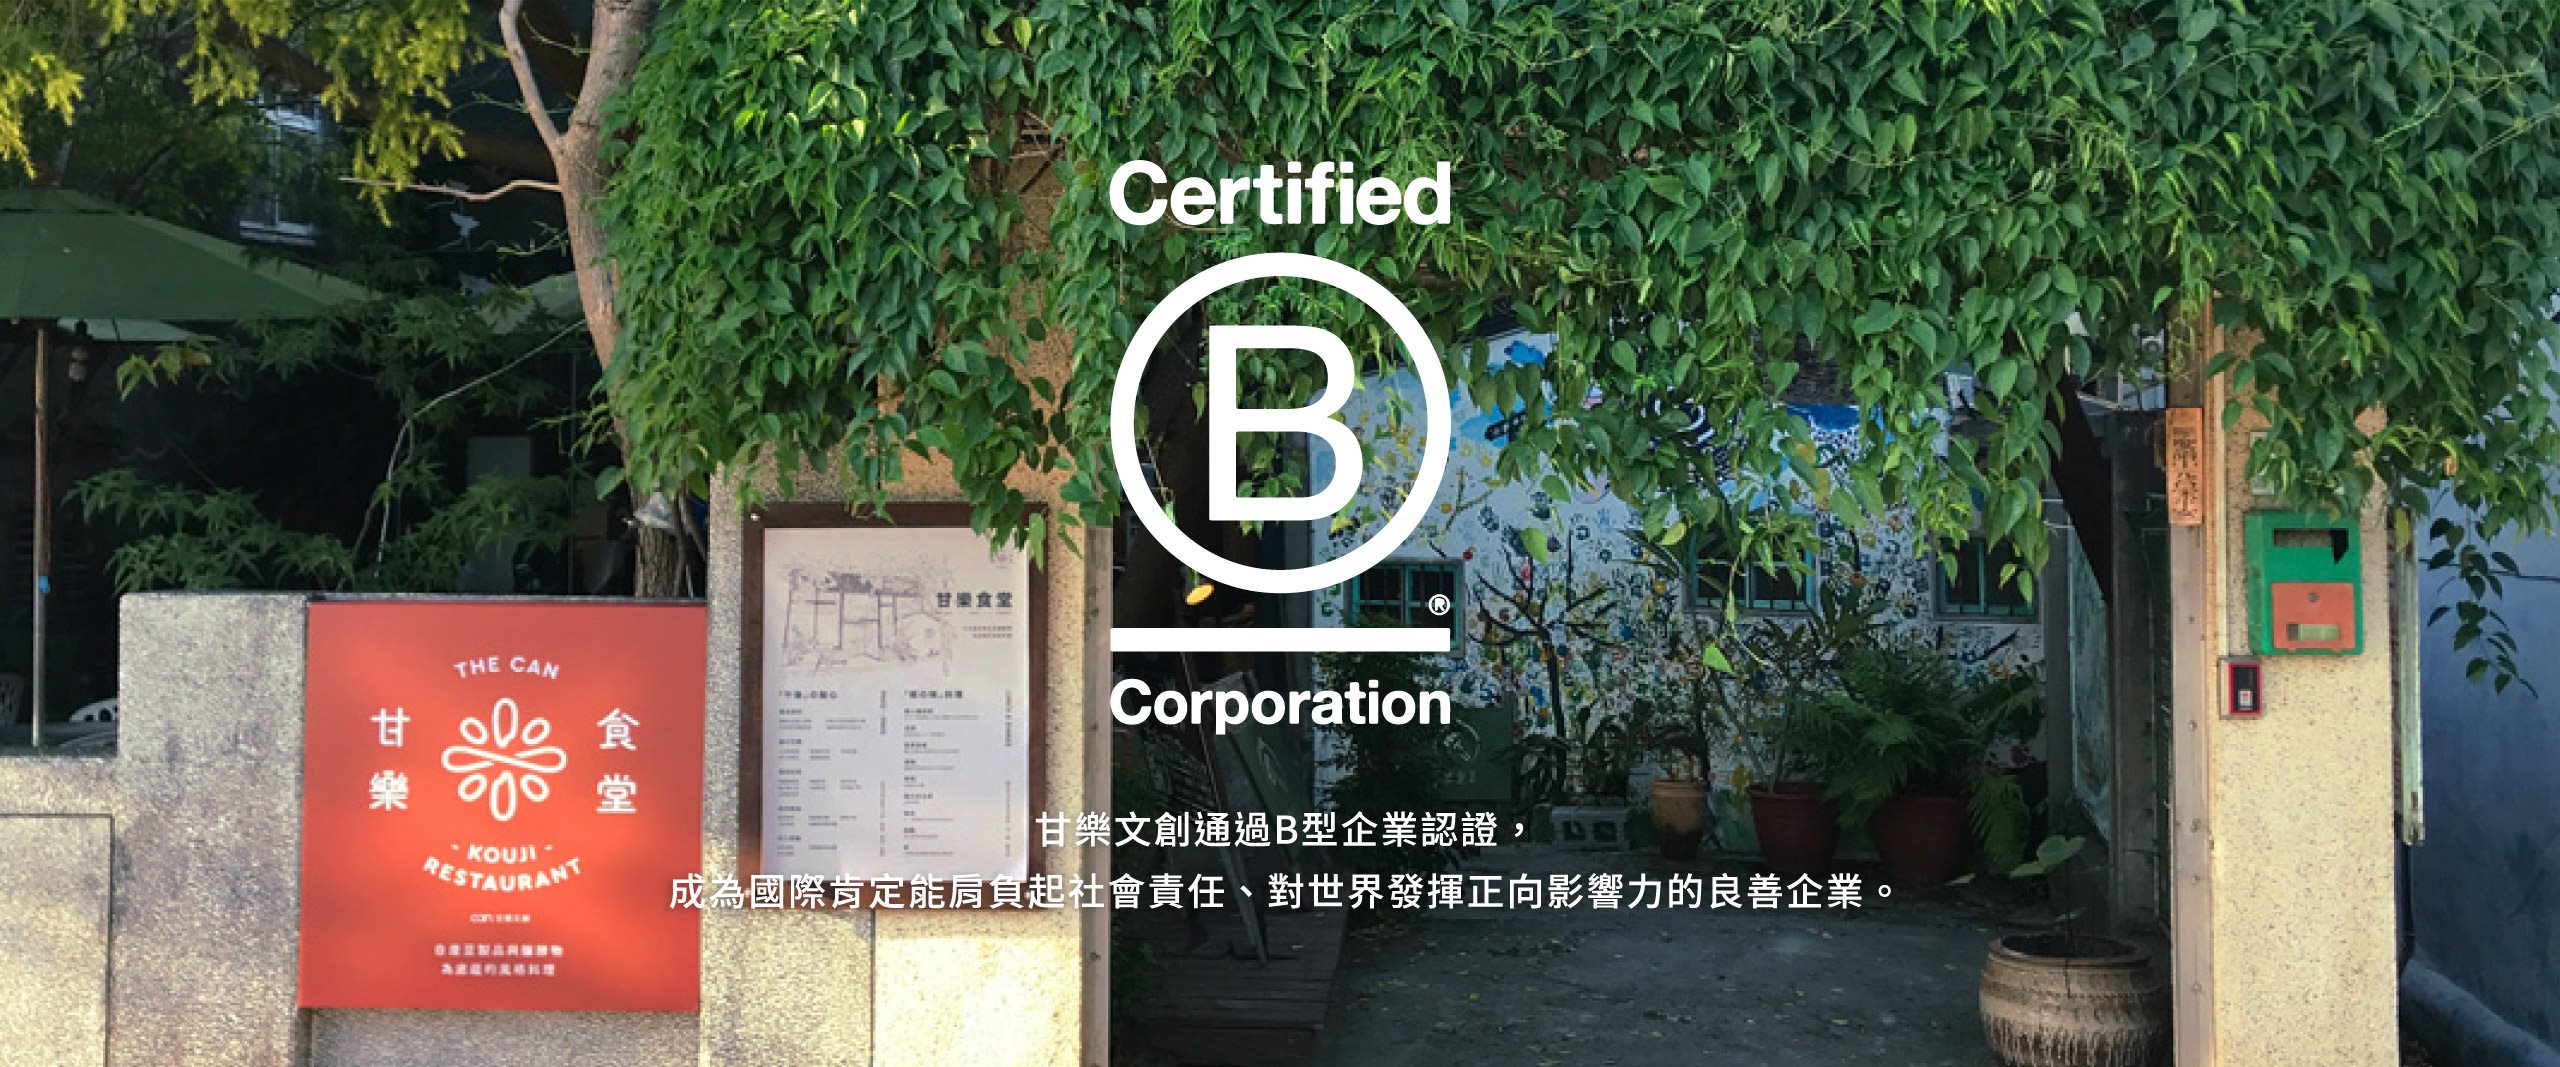 甘樂文創榮獲116高分成為台灣最高分之「B 型企業」-2022/09